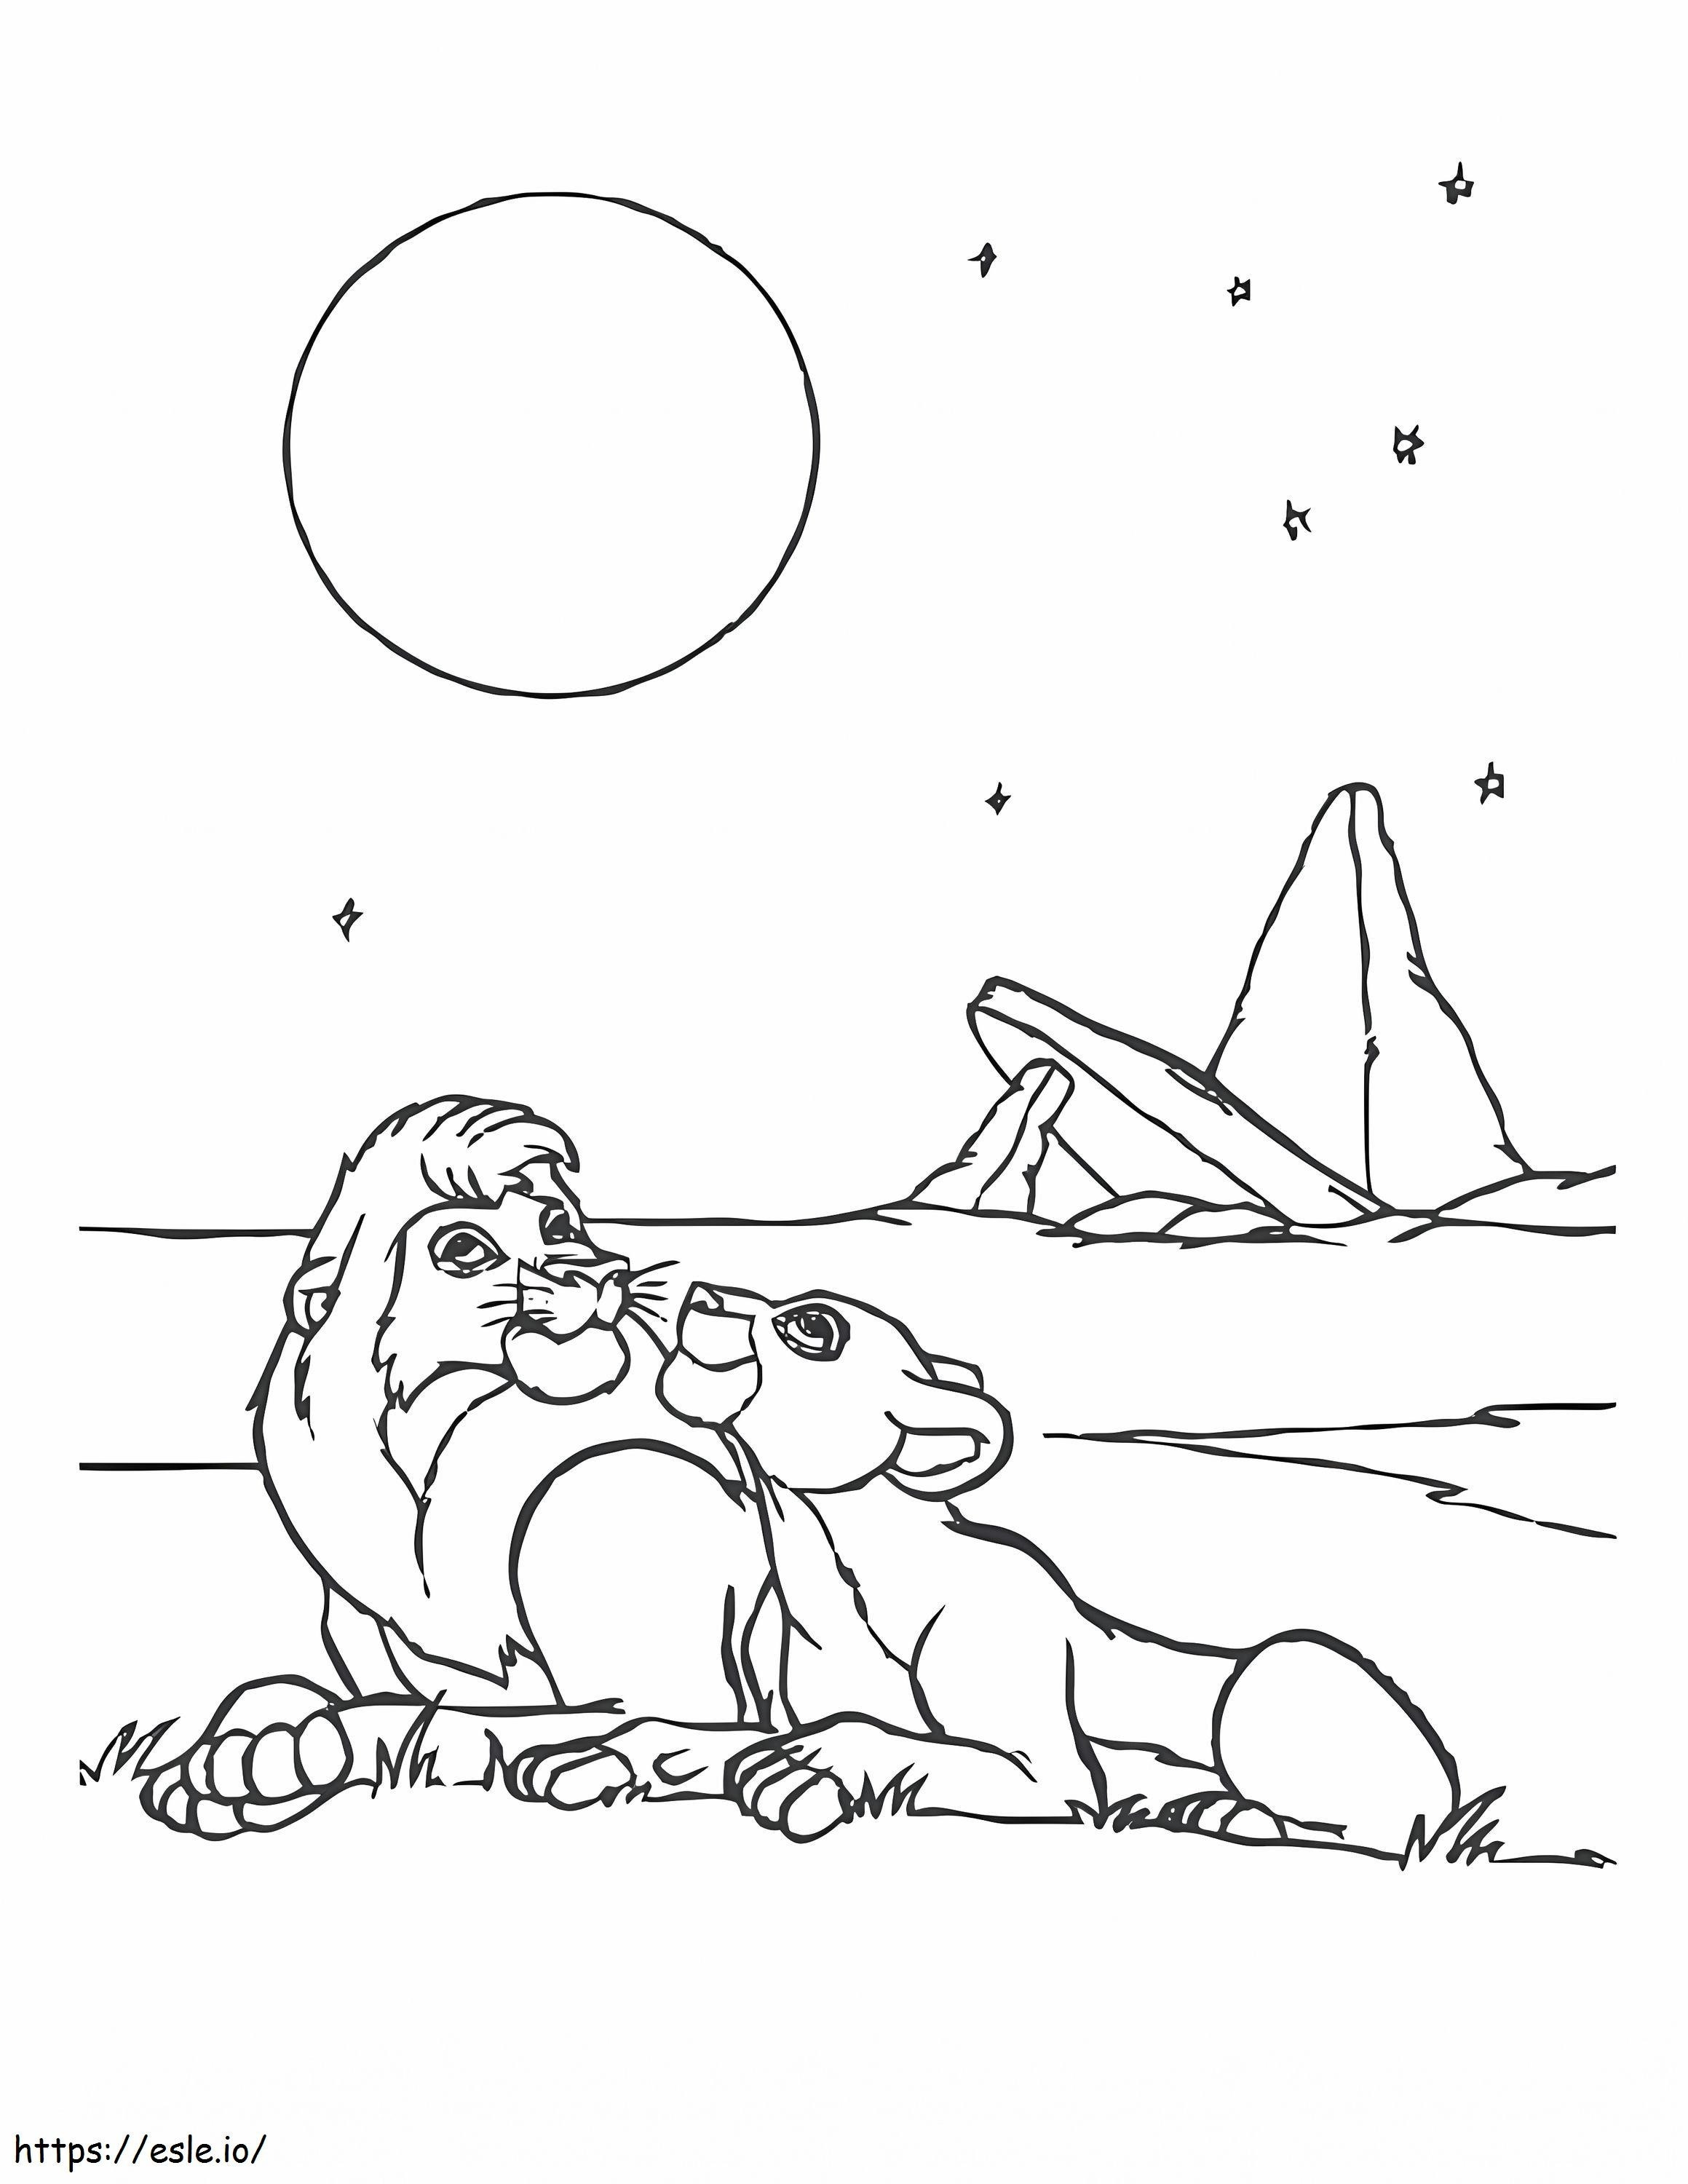 Simba And Nala A Moon coloring page